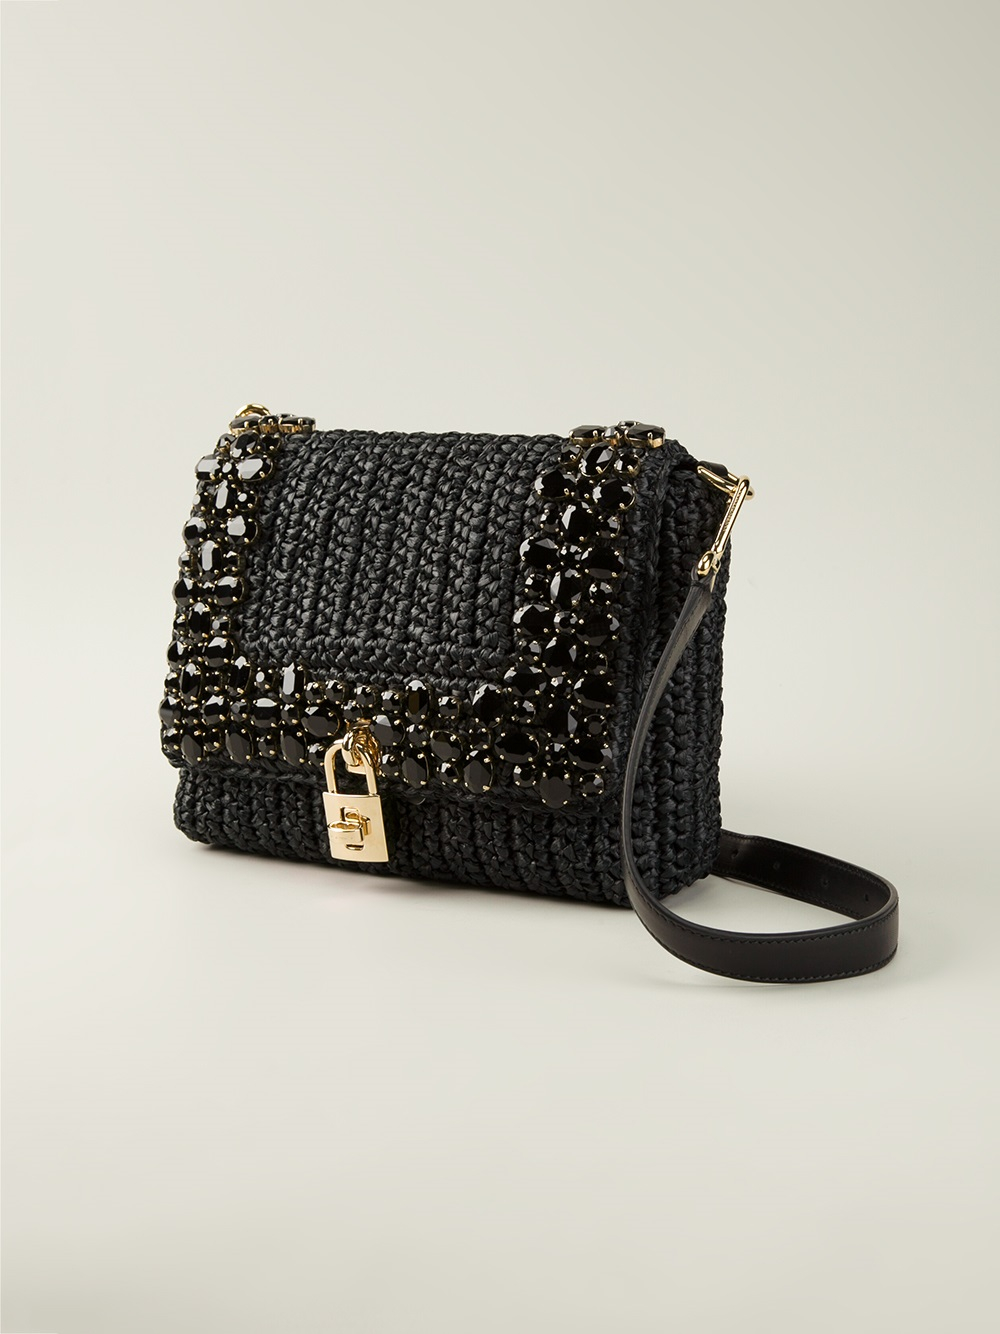 Lyst - Dolce & Gabbana Embellished Shoulder Bag in Black